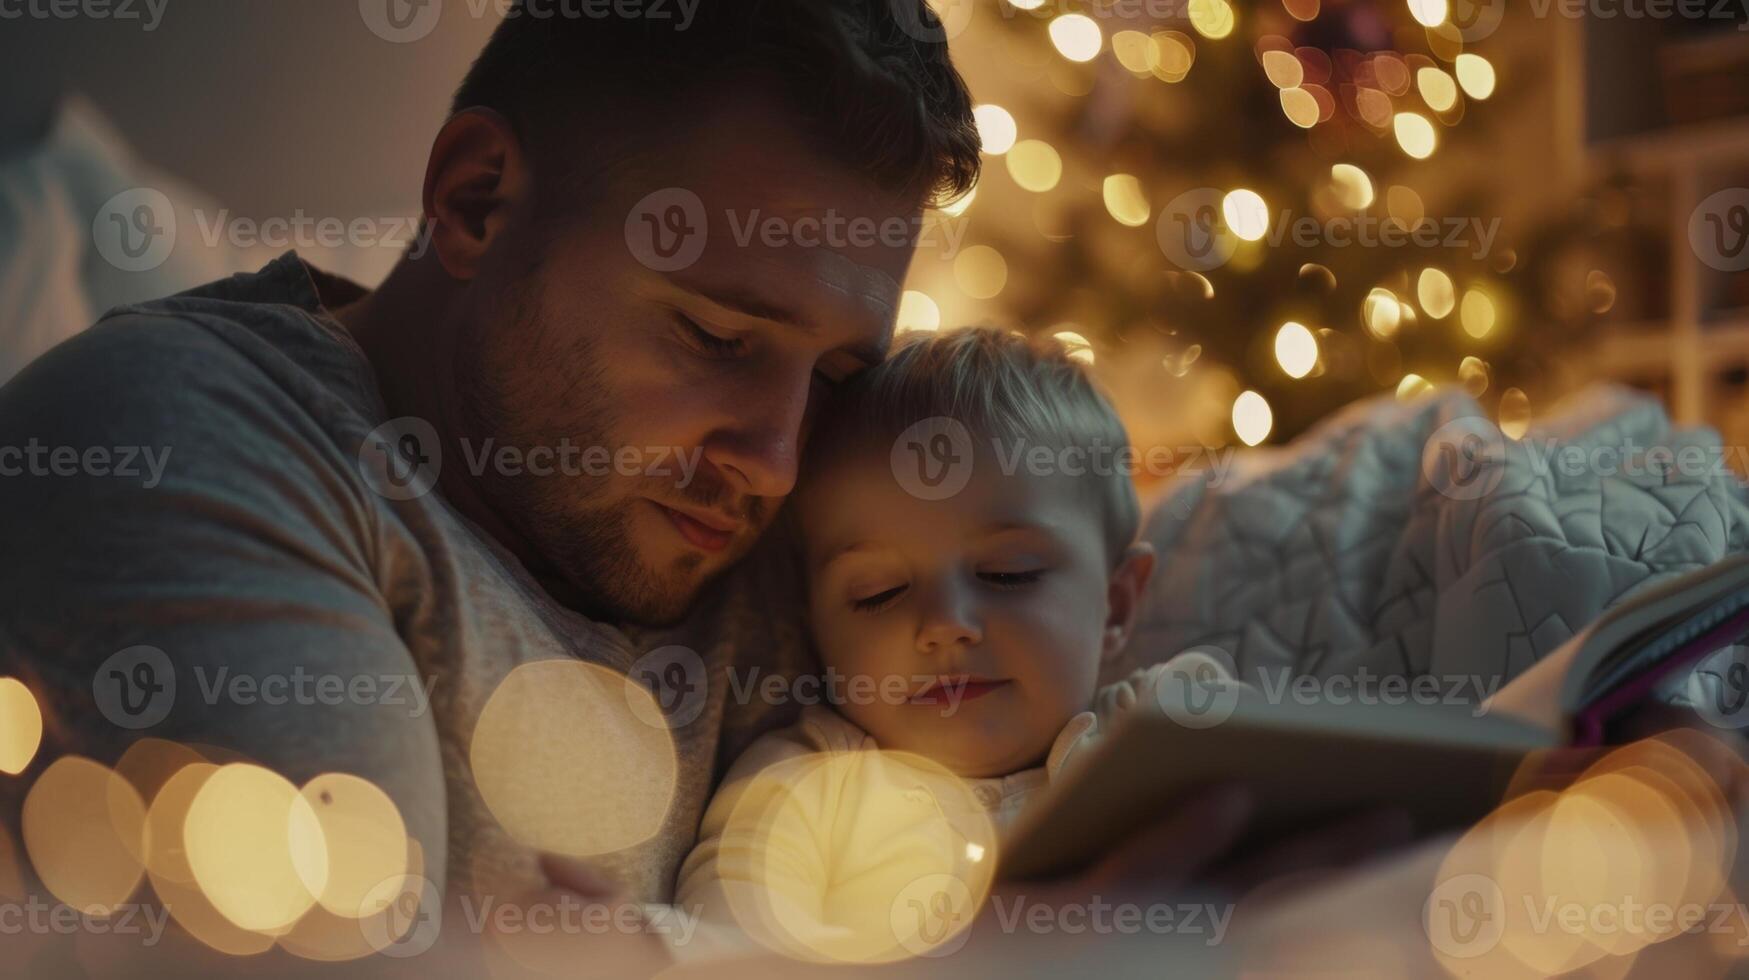 en far läser en läggdags berättelse till hans barn använder sig av mjuk och lugnande toner till stiltje dem till sömn foto